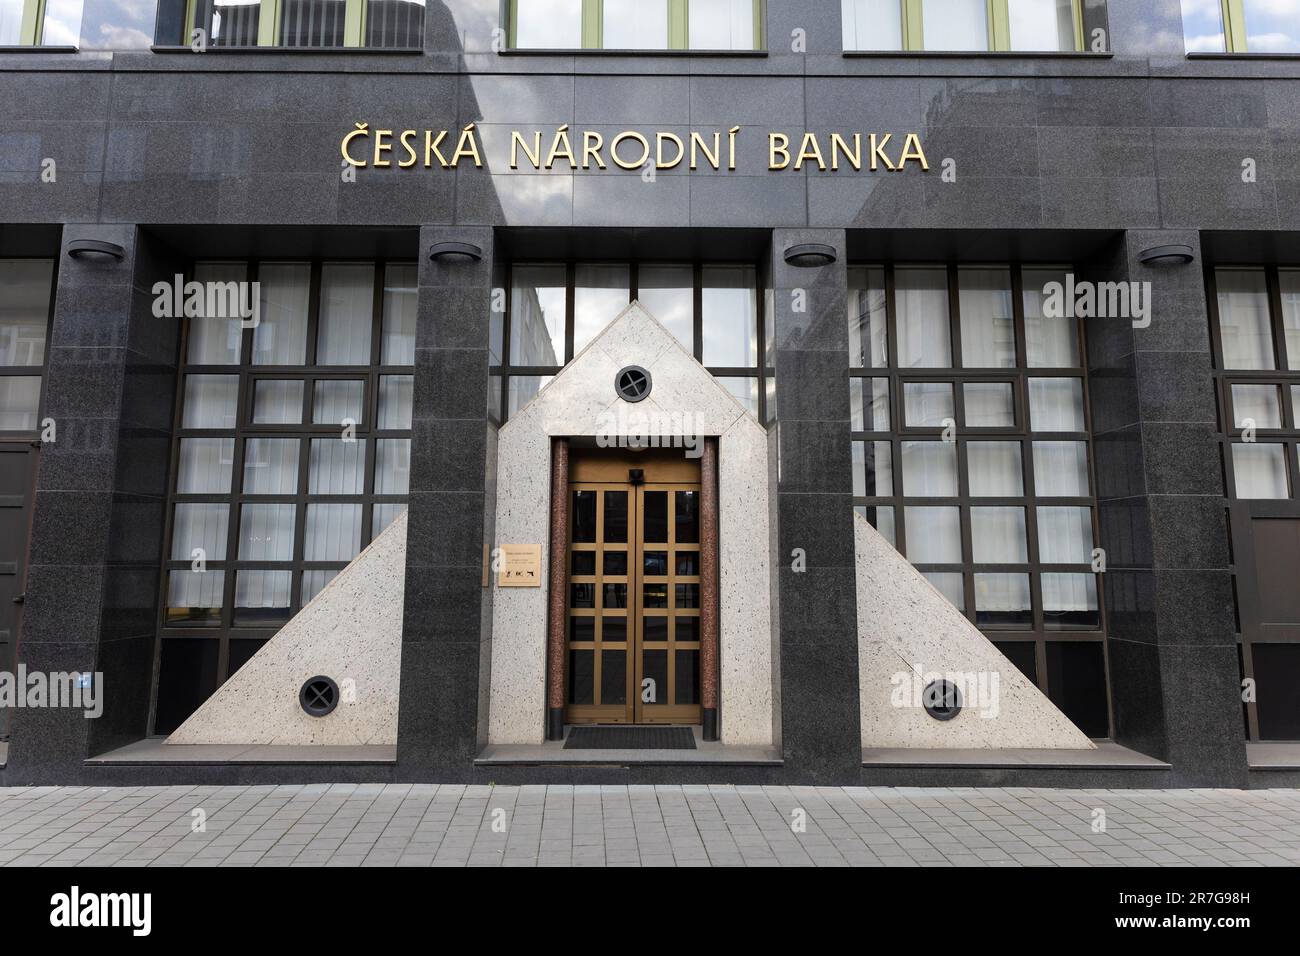 Ceska narodni banka (banque nationale tchèque), Ostrava, République tchèque, Tchéquie - 3 avril 2023: Banque centrale et de réserve. Porte d'entrée du bâtiment, sym Banque D'Images